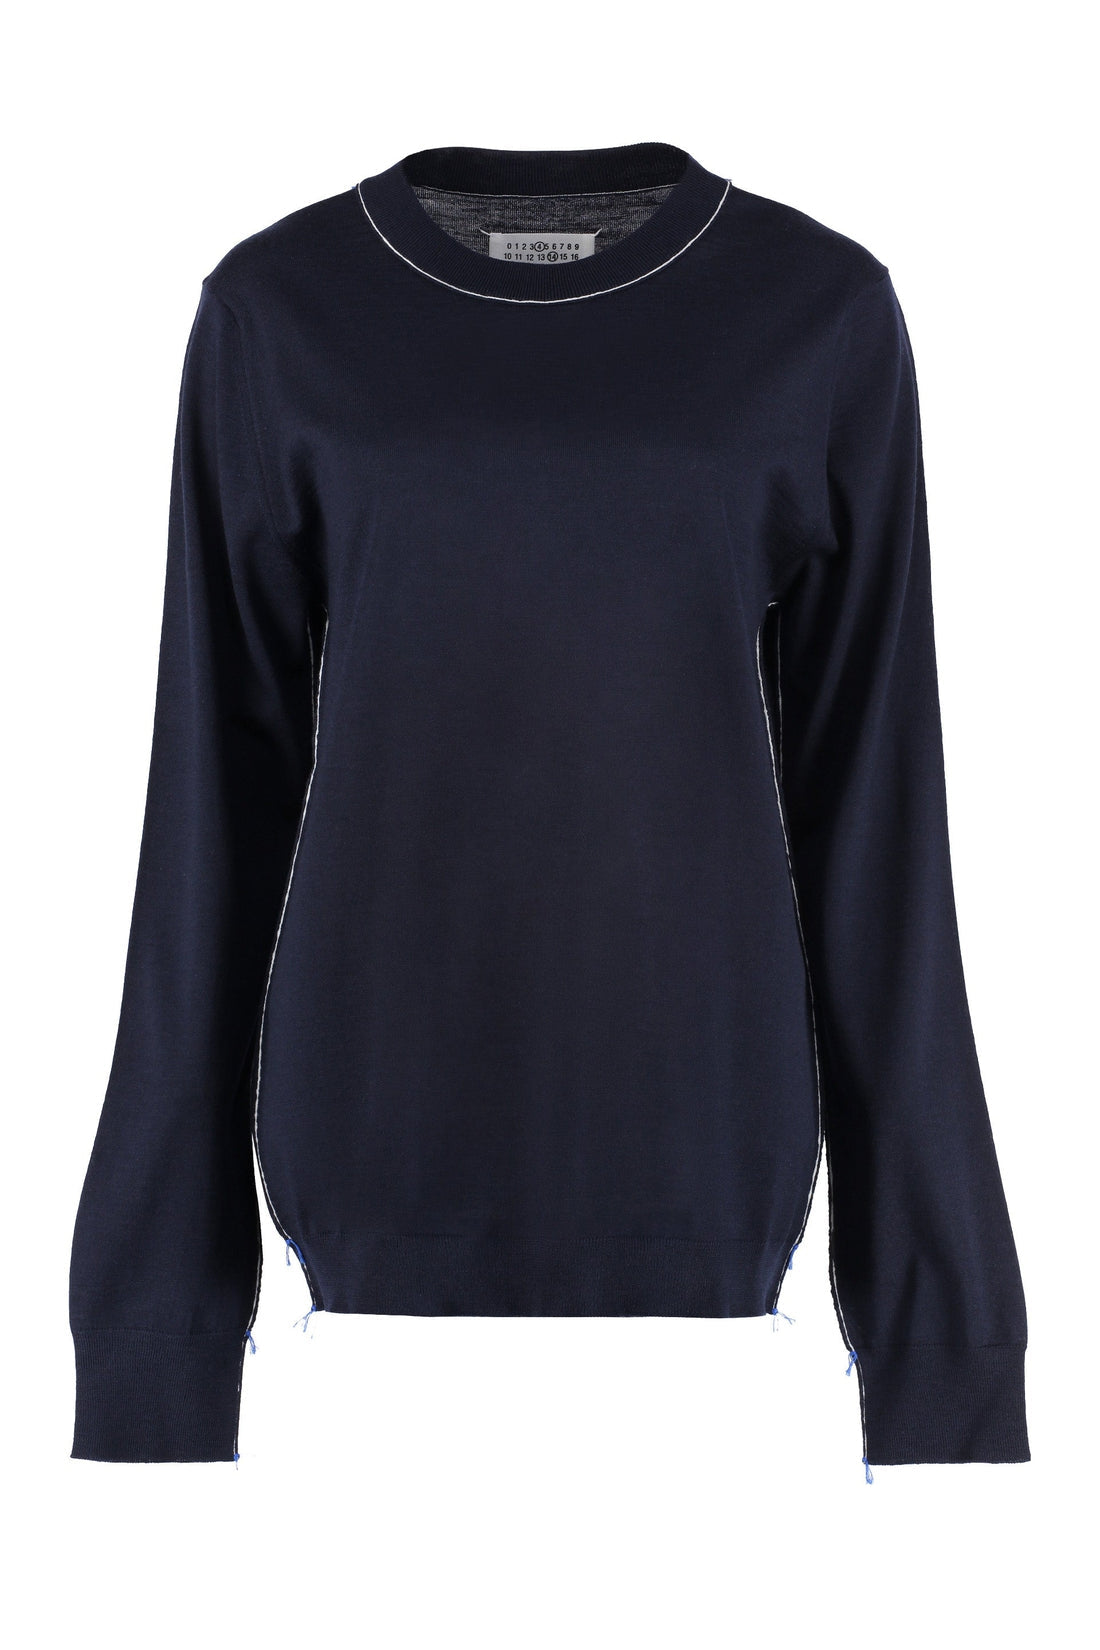 Maison Margiela-OUTLET-SALE-Wool-cotton blend crew-neck sweater-ARCHIVIST